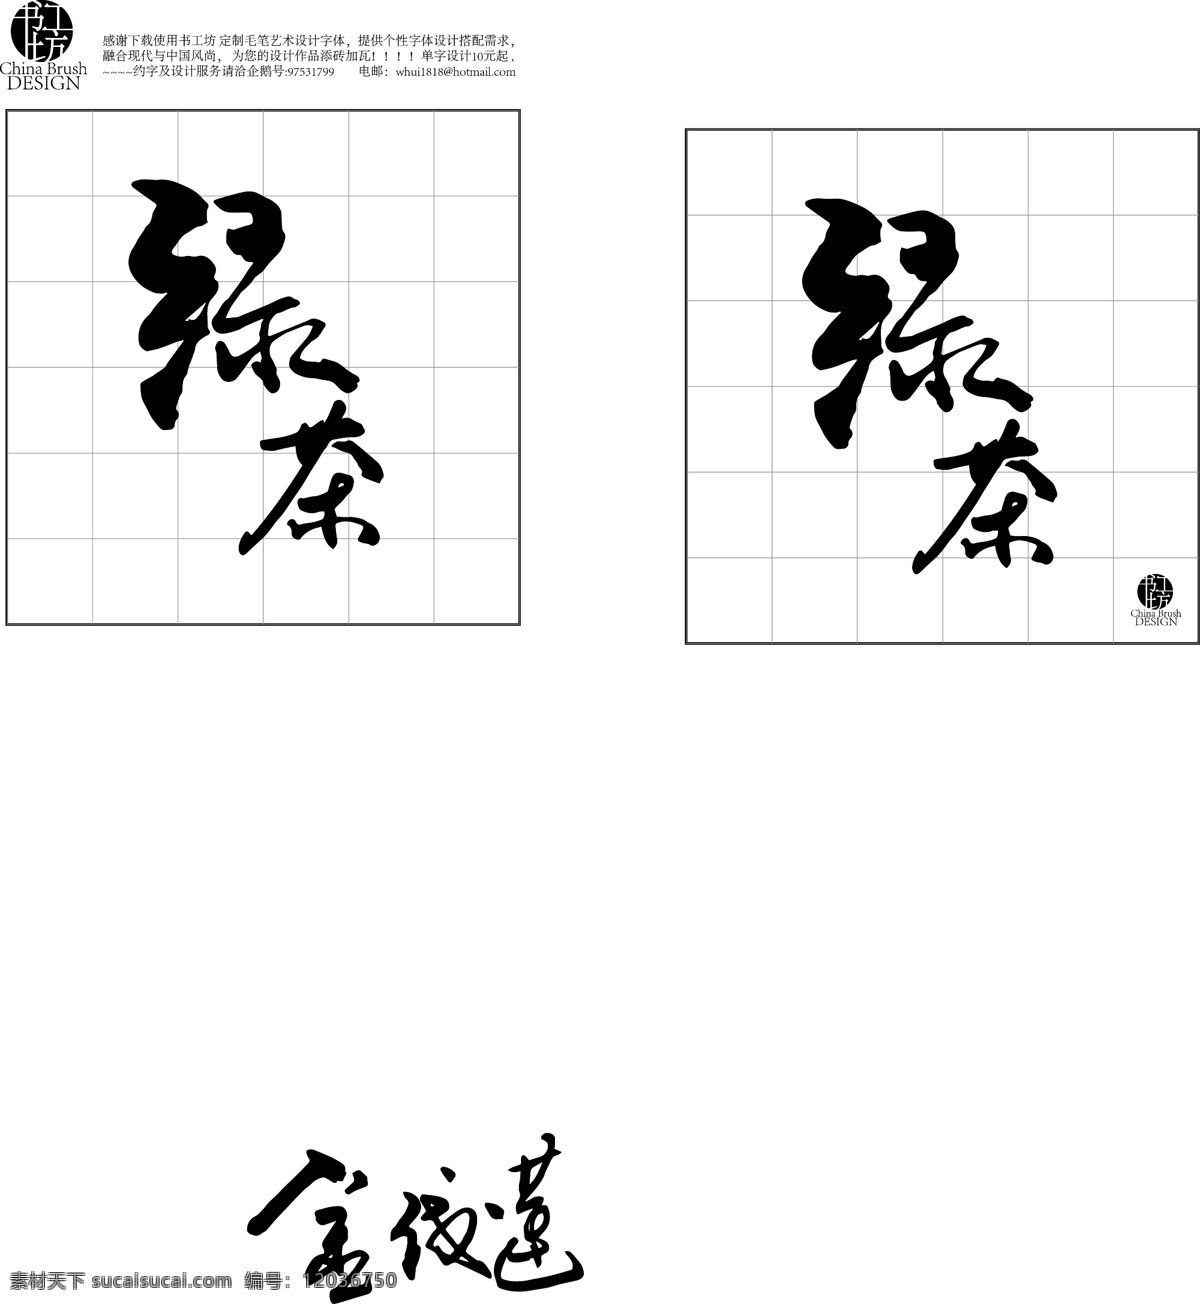 绿茶 茶 书法 字体 定制 现代 文化艺术 绘画书法